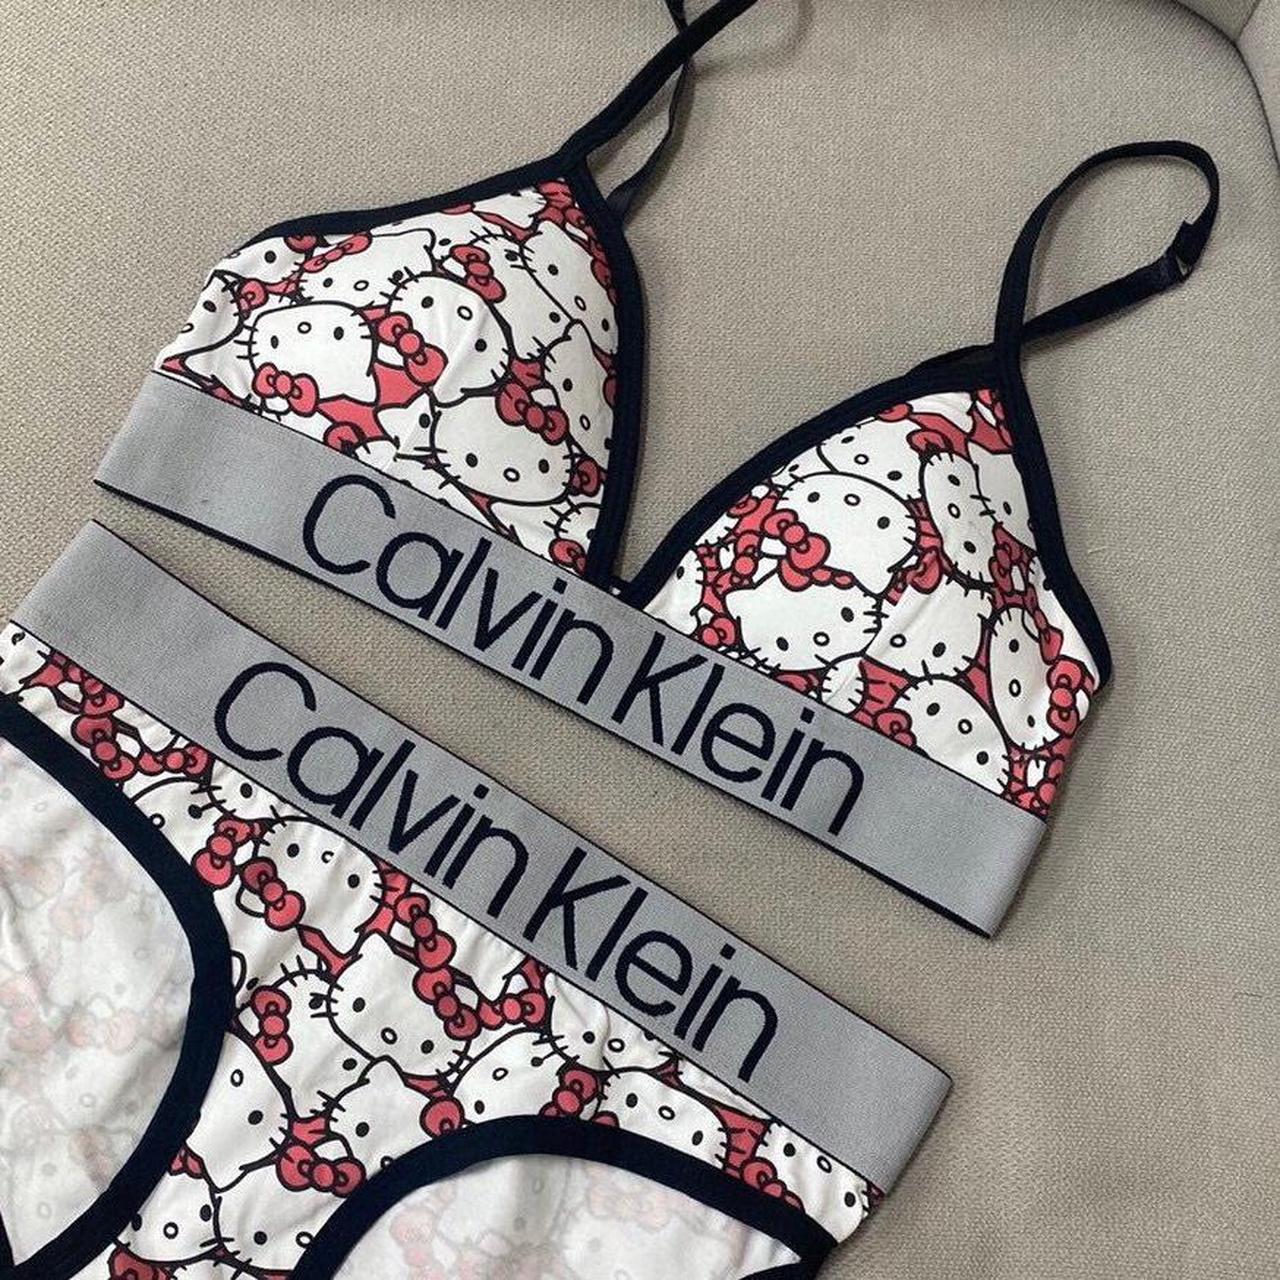 Calvin Klein 3 piece lingerie set. 34B/ S/M. - Depop